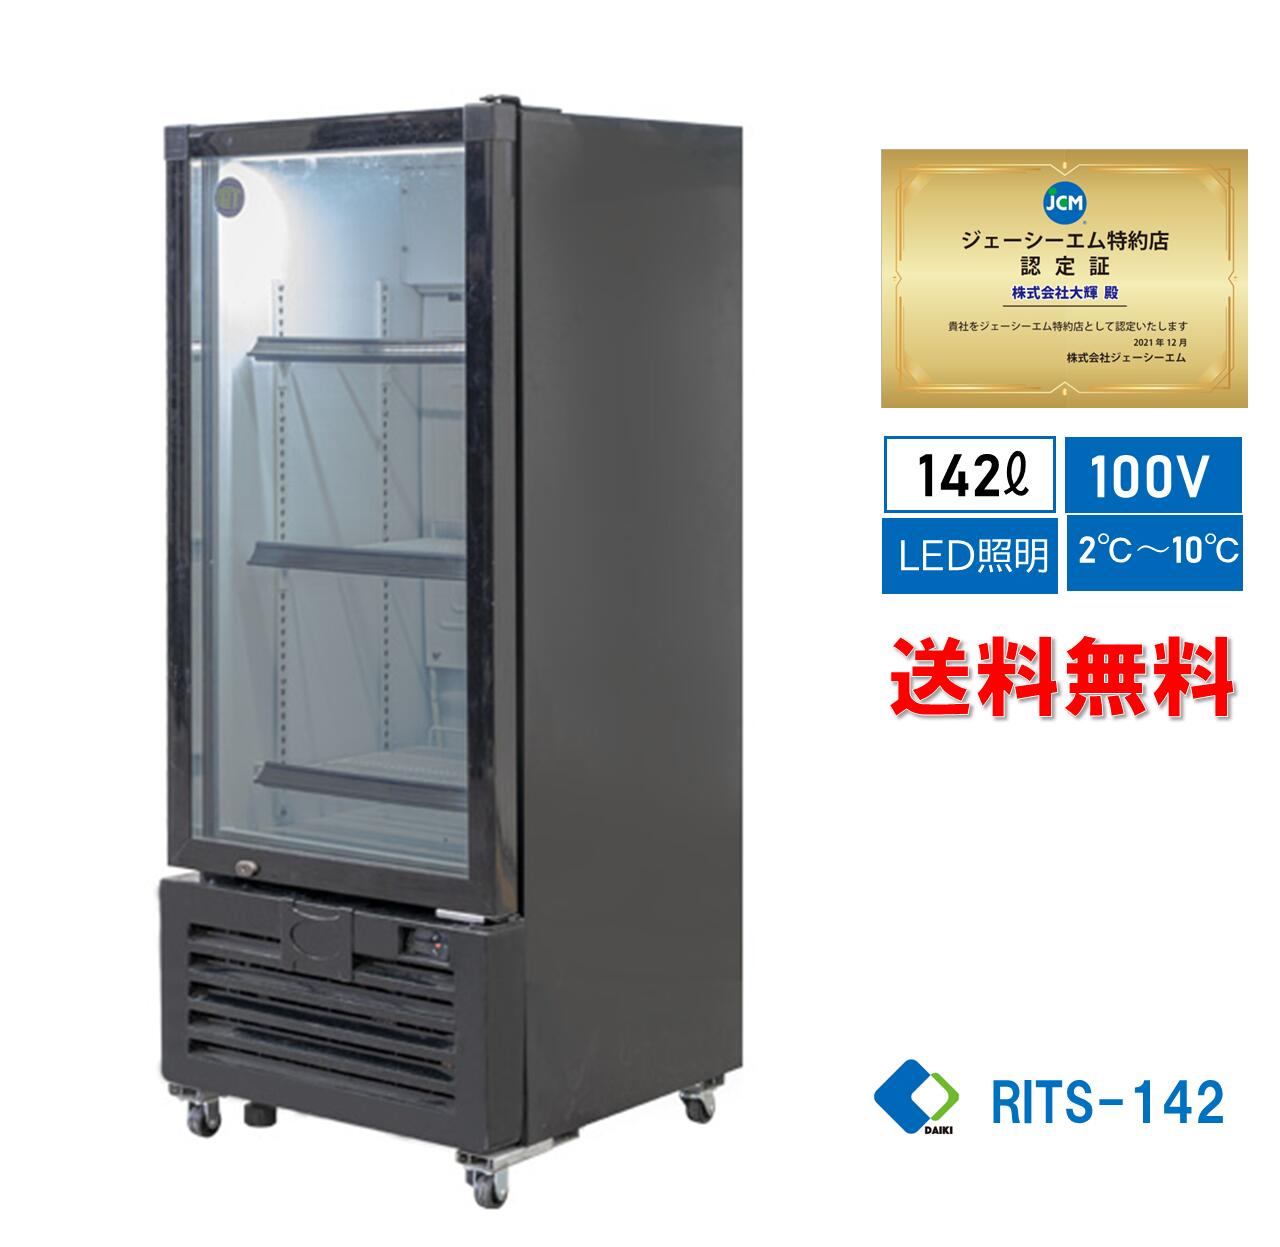 ☆助成金対象商品☆業務用 JCM RIT タテ型 冷蔵ショーケース 冷蔵庫 